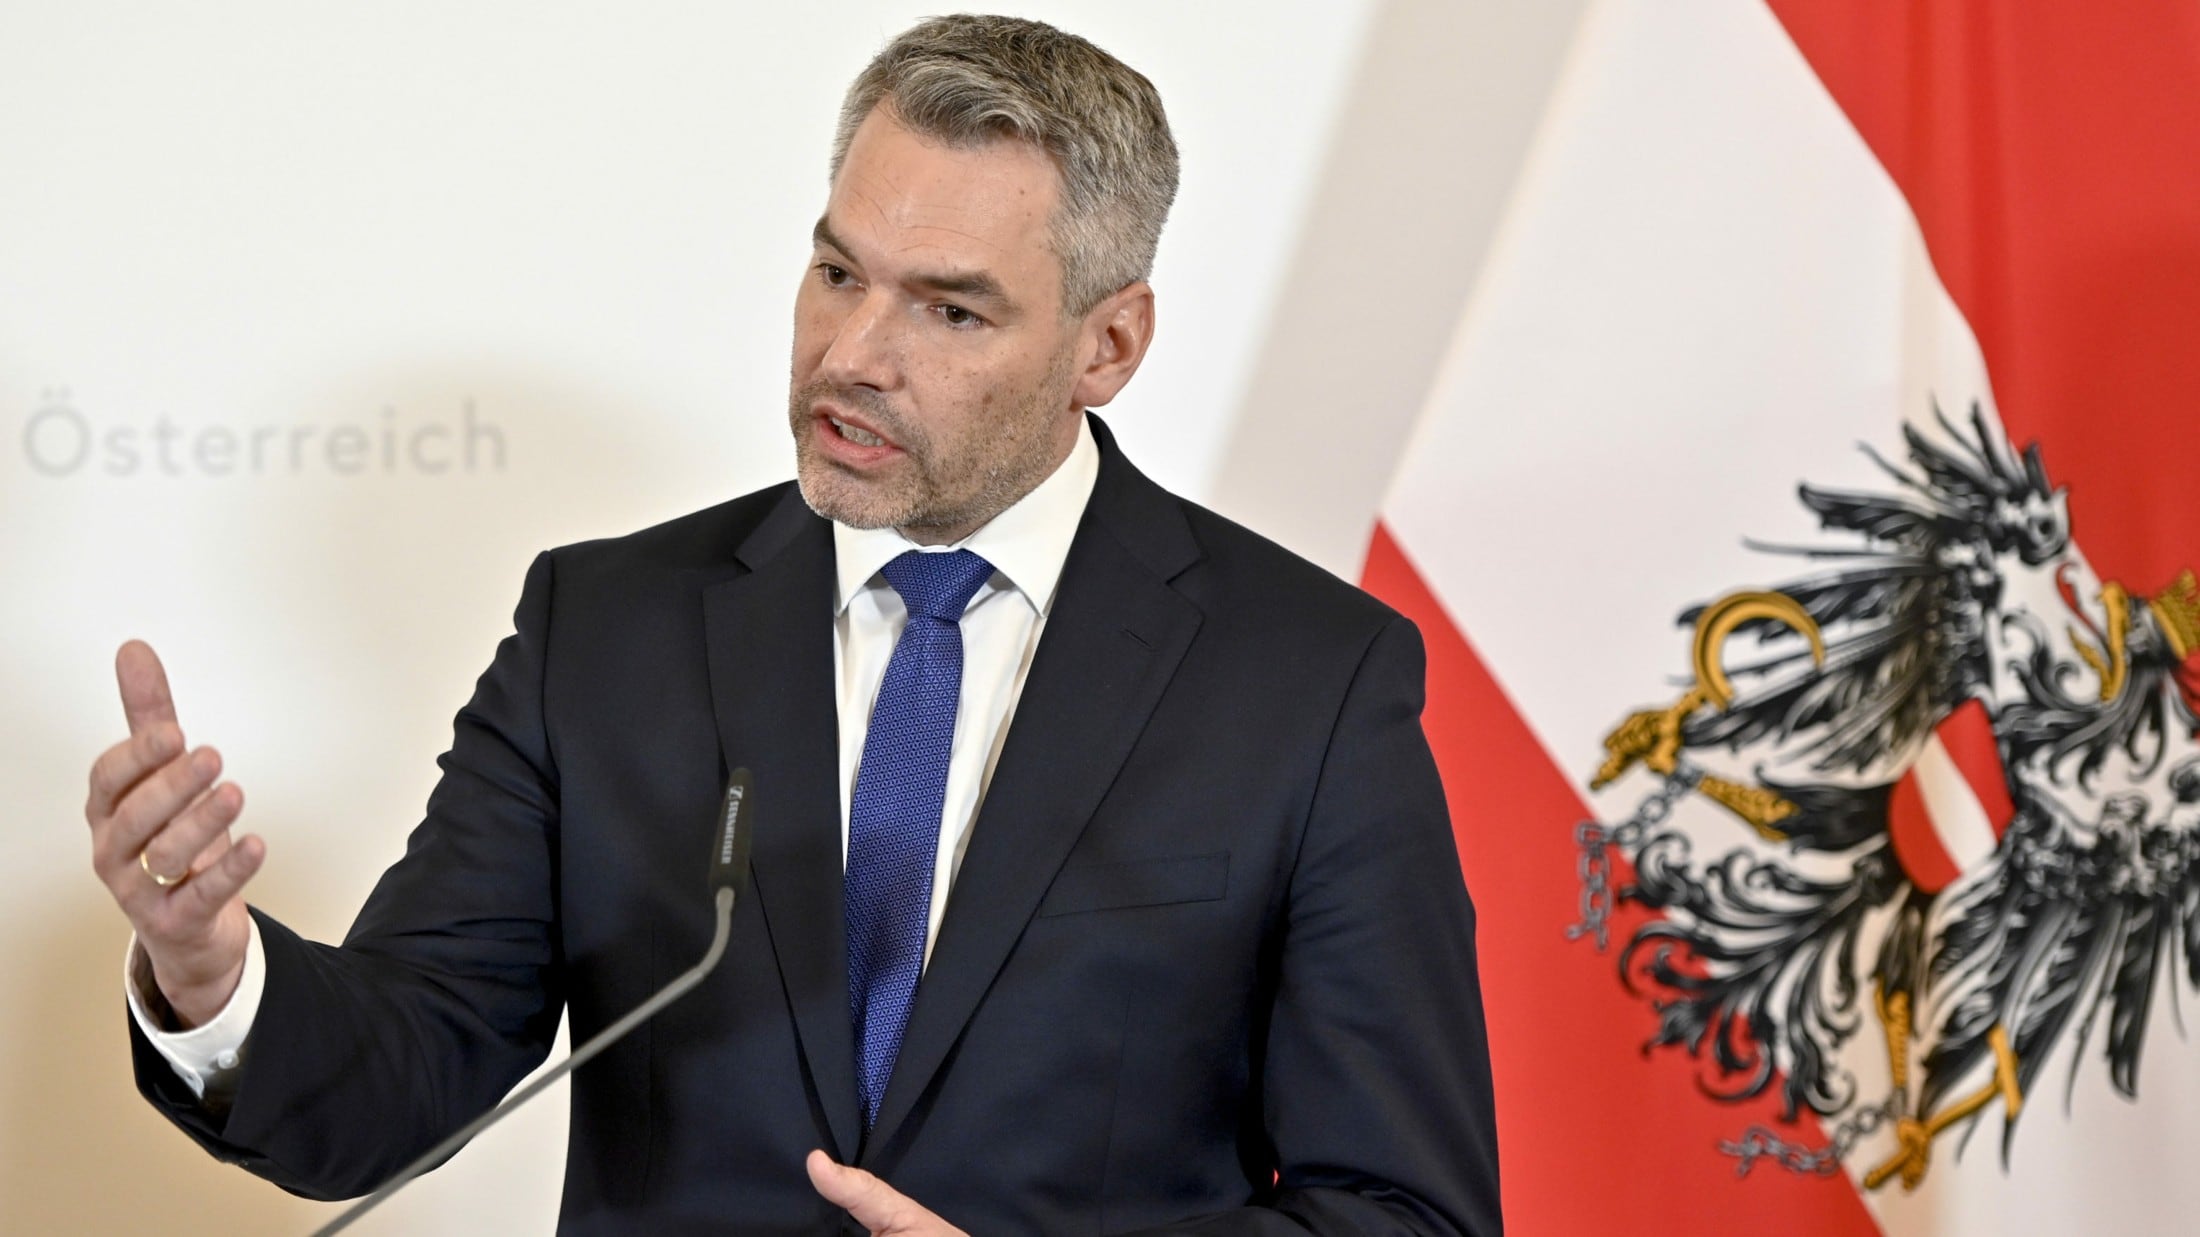 Minister stellt klar: - Keine neuen Asylzentren - aber grenznahe Verfahren  | krone.at